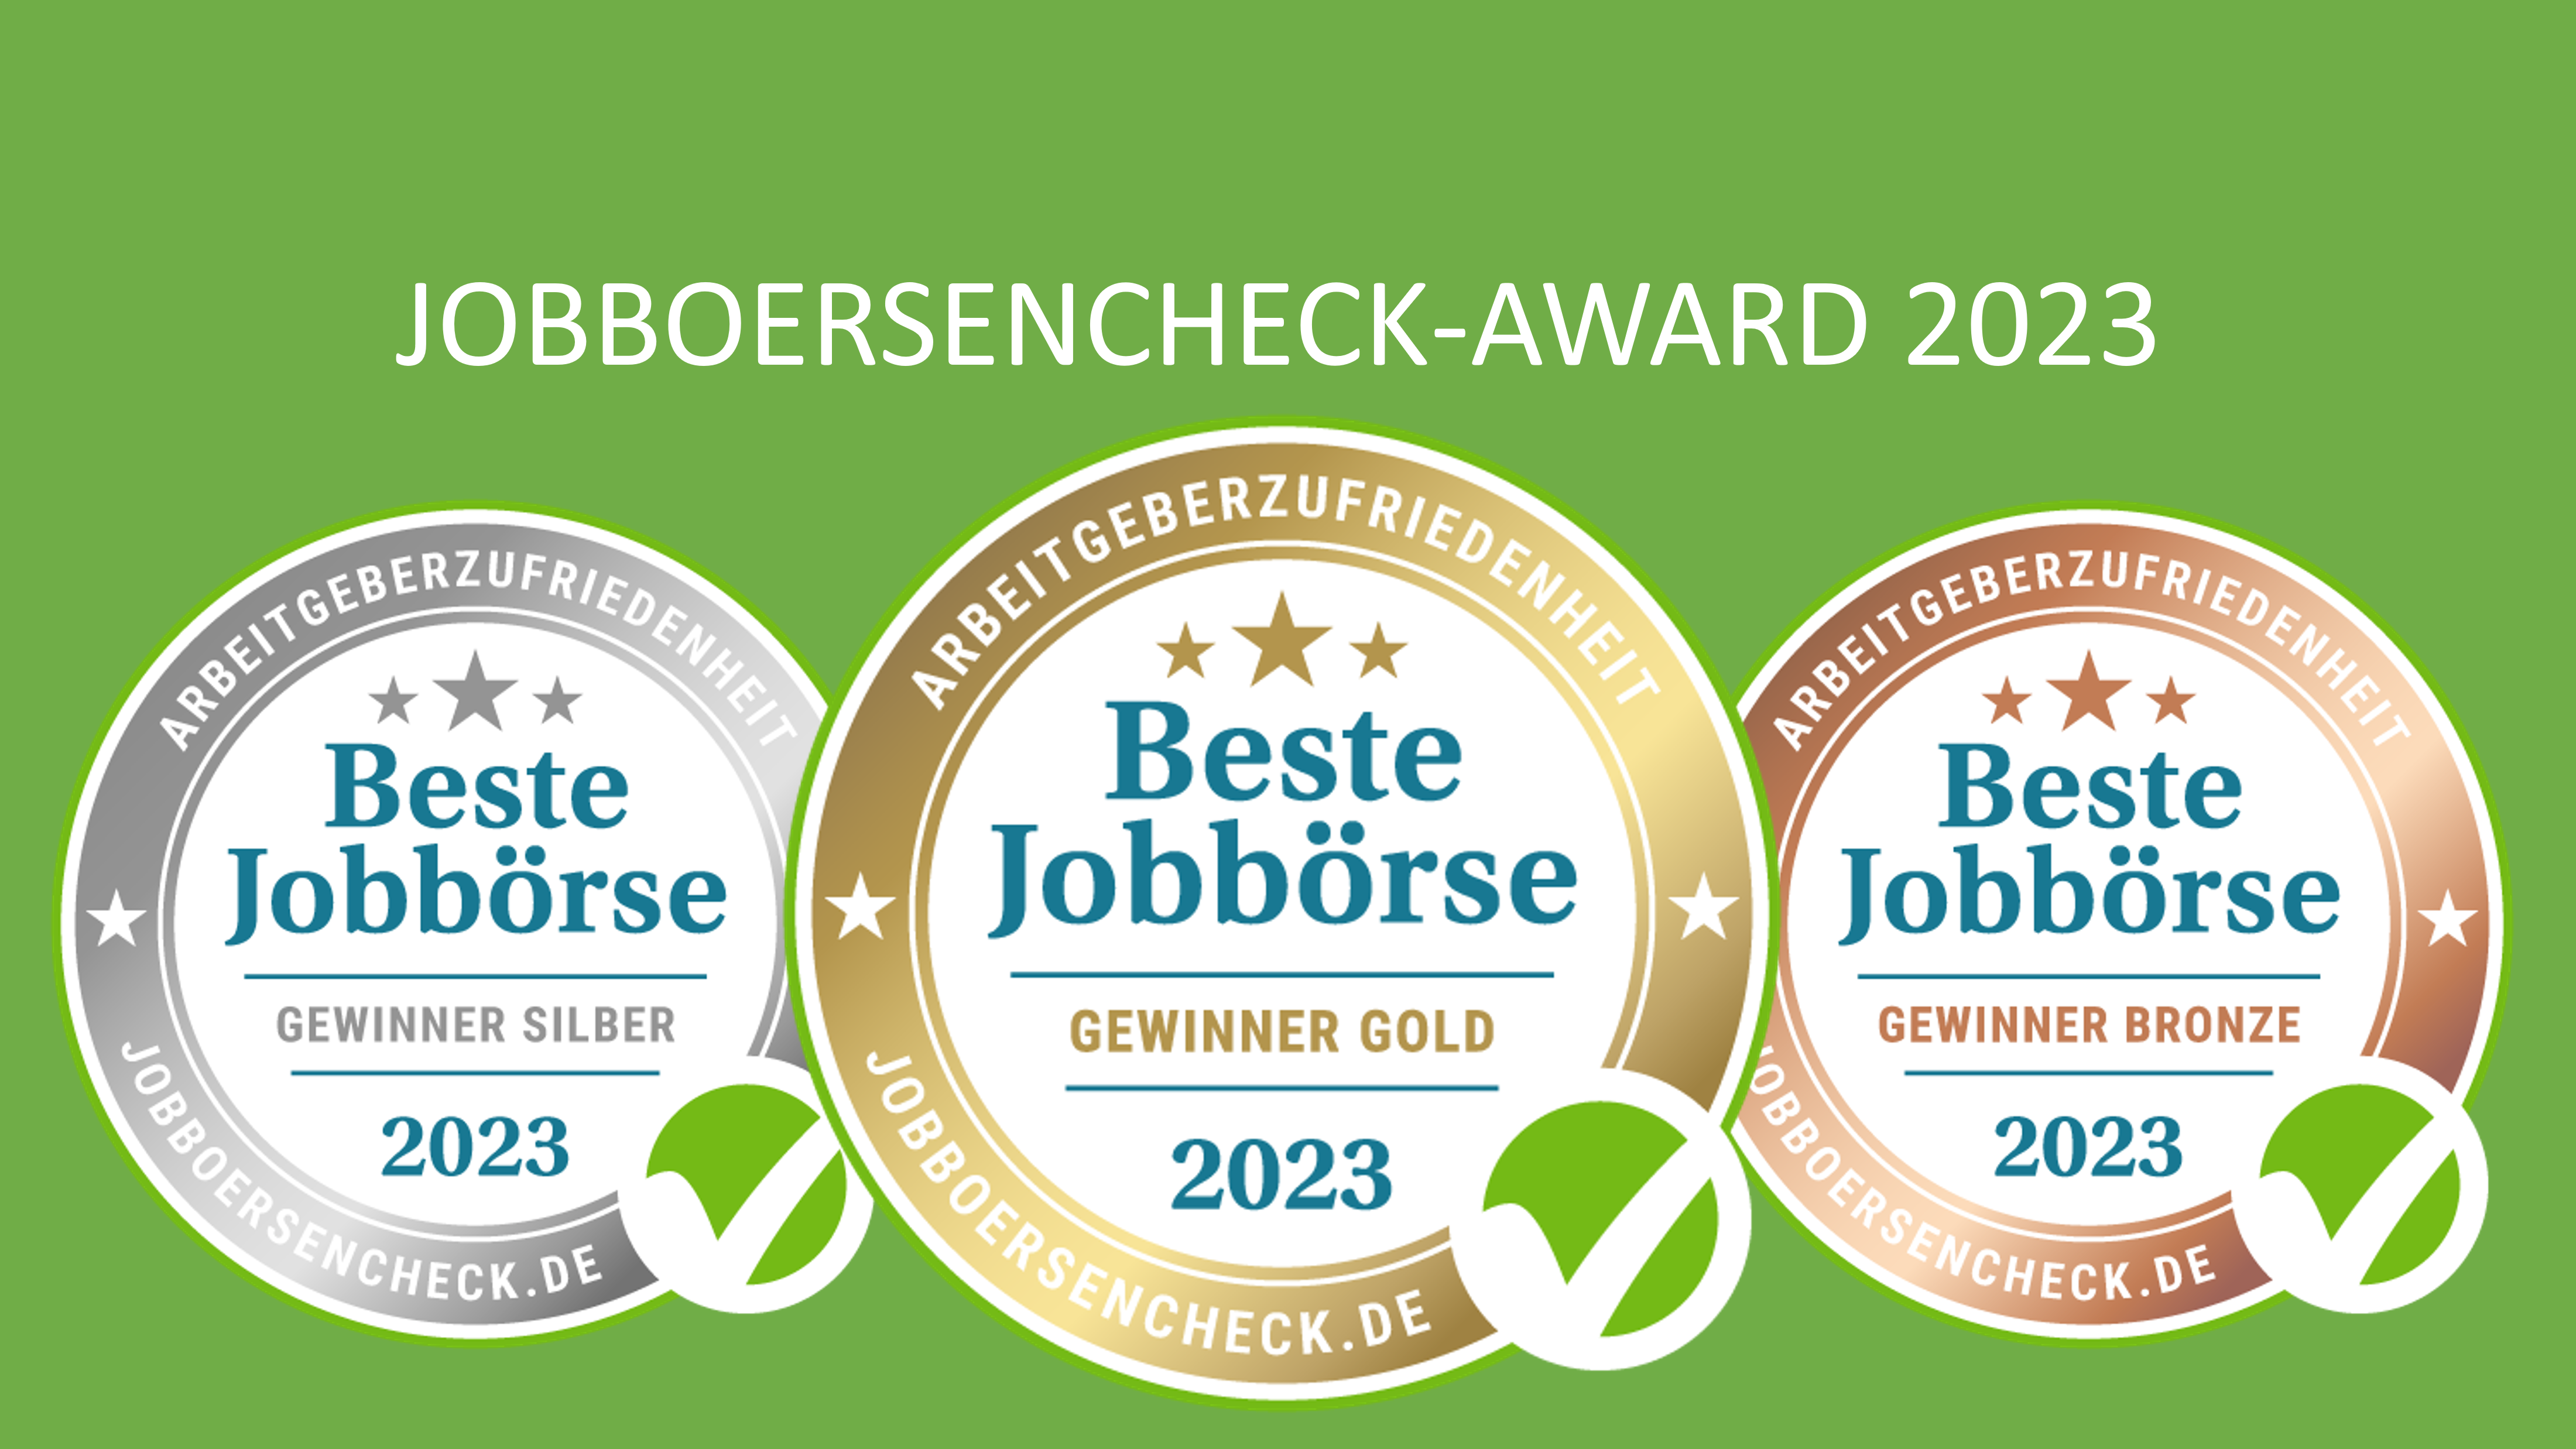 Jobboersencheck-award2023 2